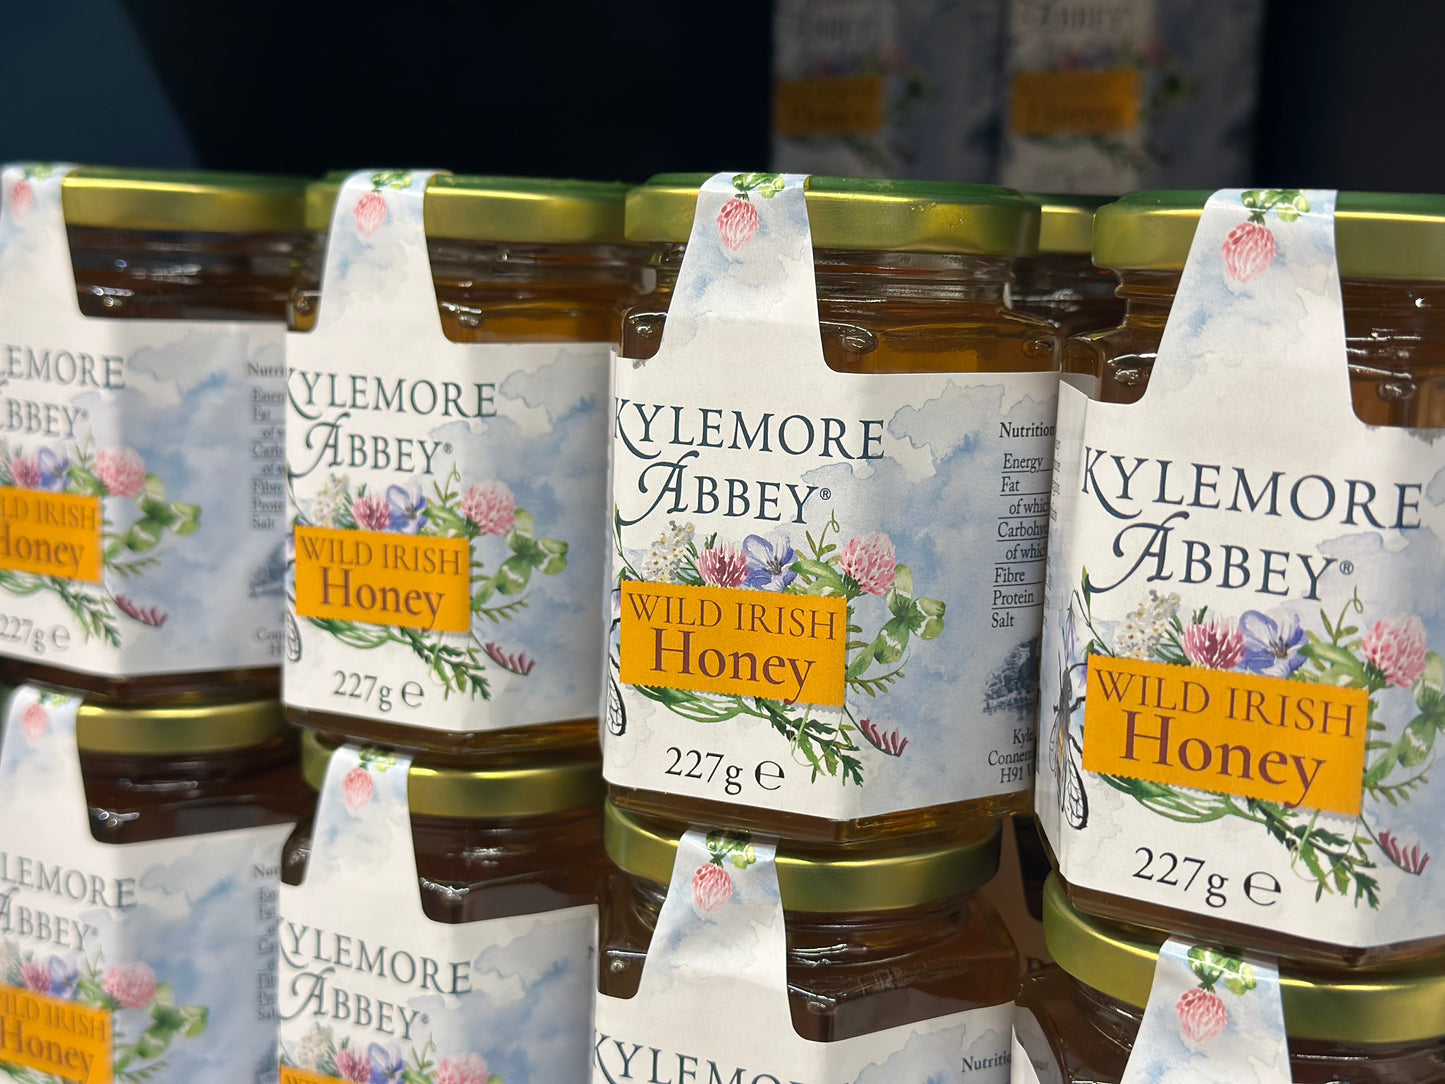 
                  
                    Kylemore Abbey Wild Irish Honey
                  
                